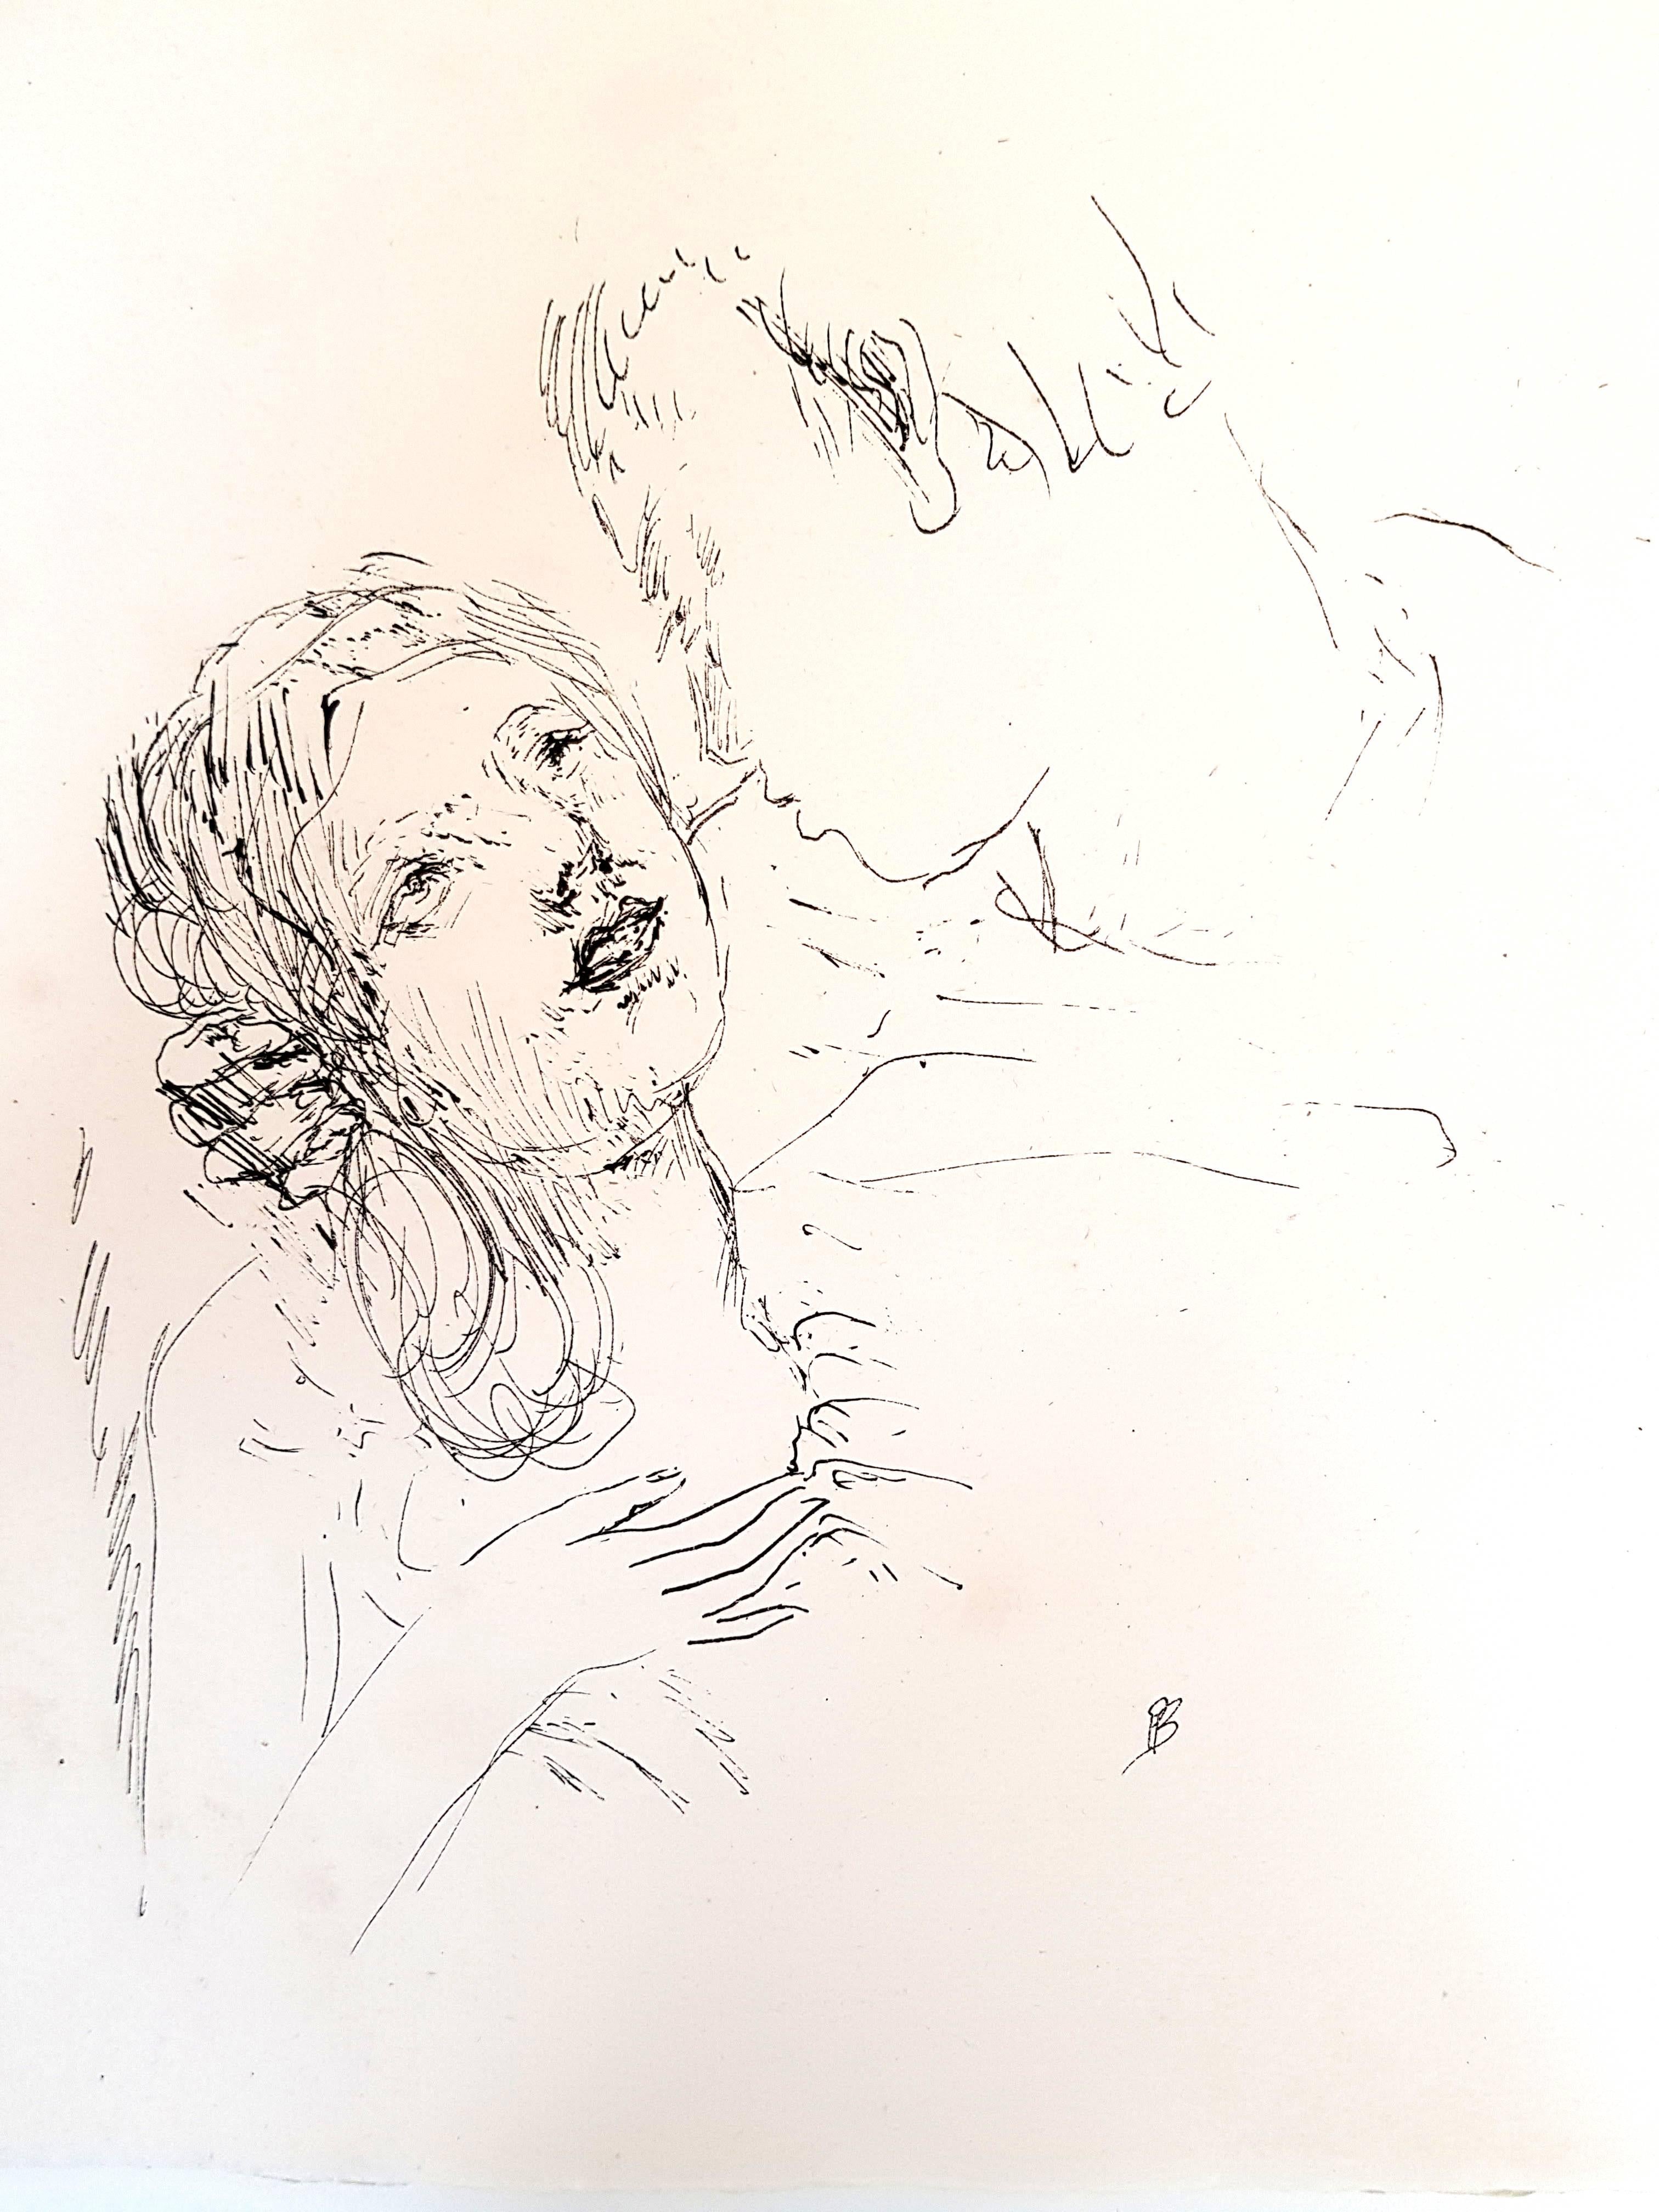 Sainte Monique, 1930
Reference: "Bonnard - L'oeuvre Gravée" by Francis Bouvet (N.111)
Editions: Ambroise Vollard, Paris, Aimé Jourde.
Original lithograph, signed in the plate (monogram PB).
Edition: 257 ex.
Dimensions: Paper sizes: 32,5 x 25 cm ;